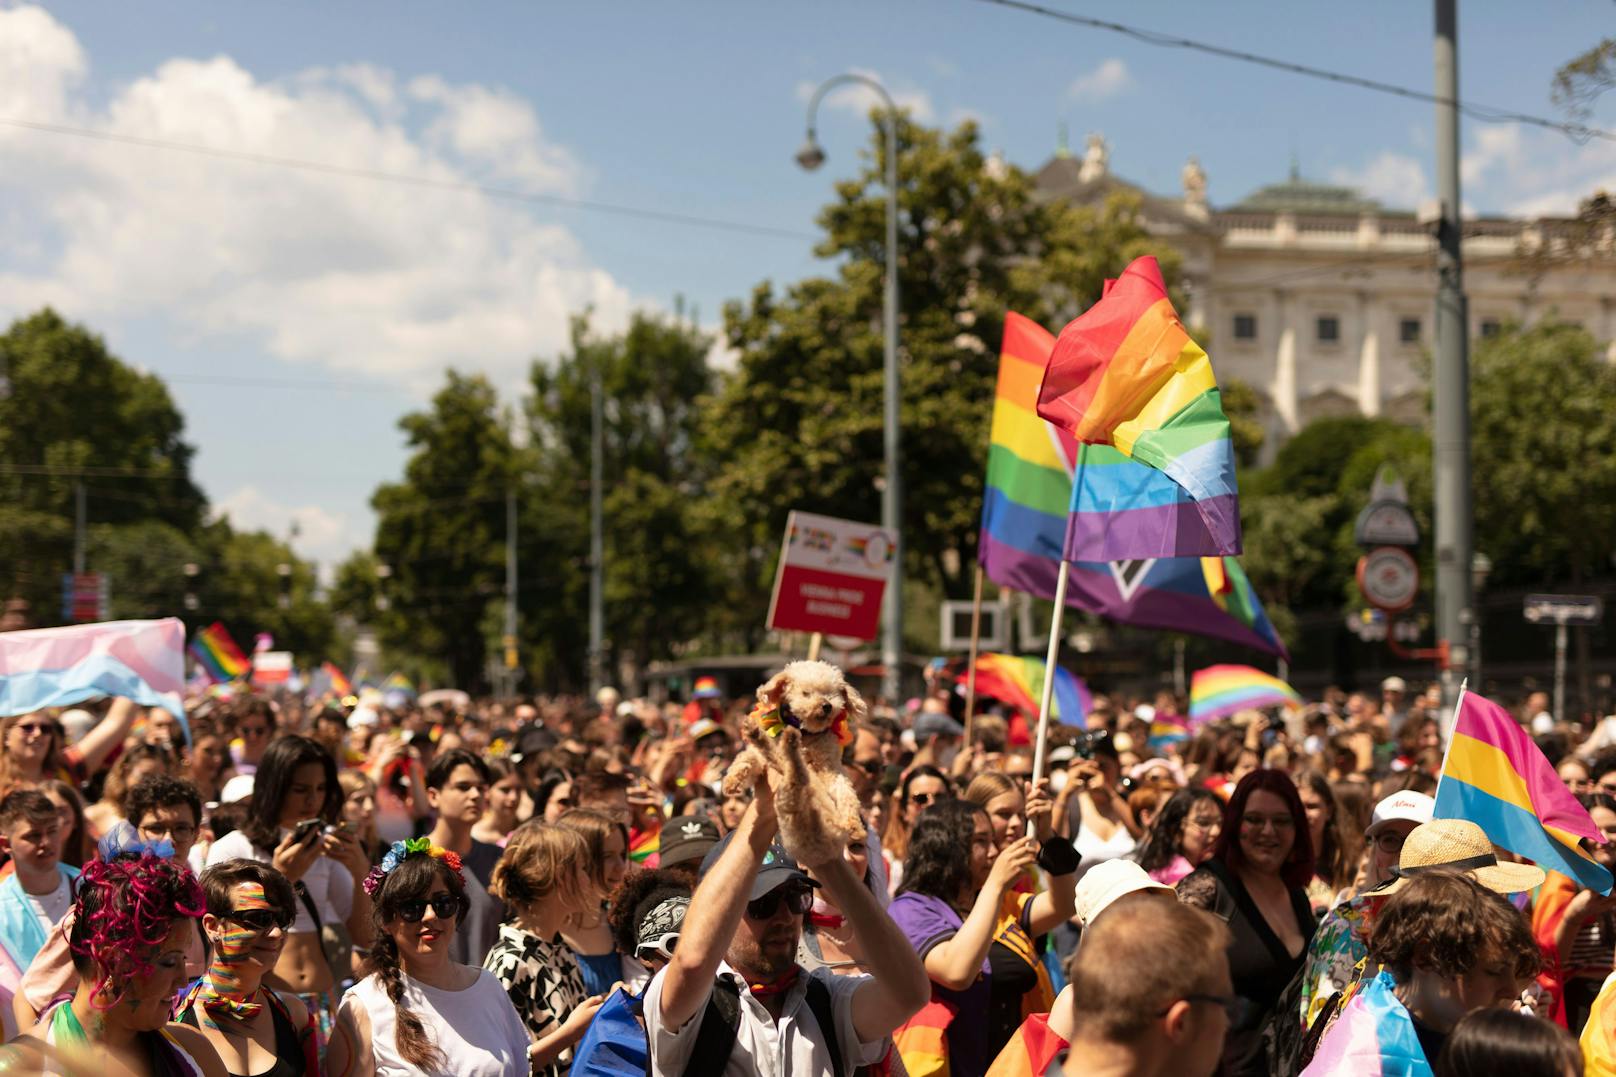 Neue Chats: Teenies wollten Bombe für Pride-Anschlag